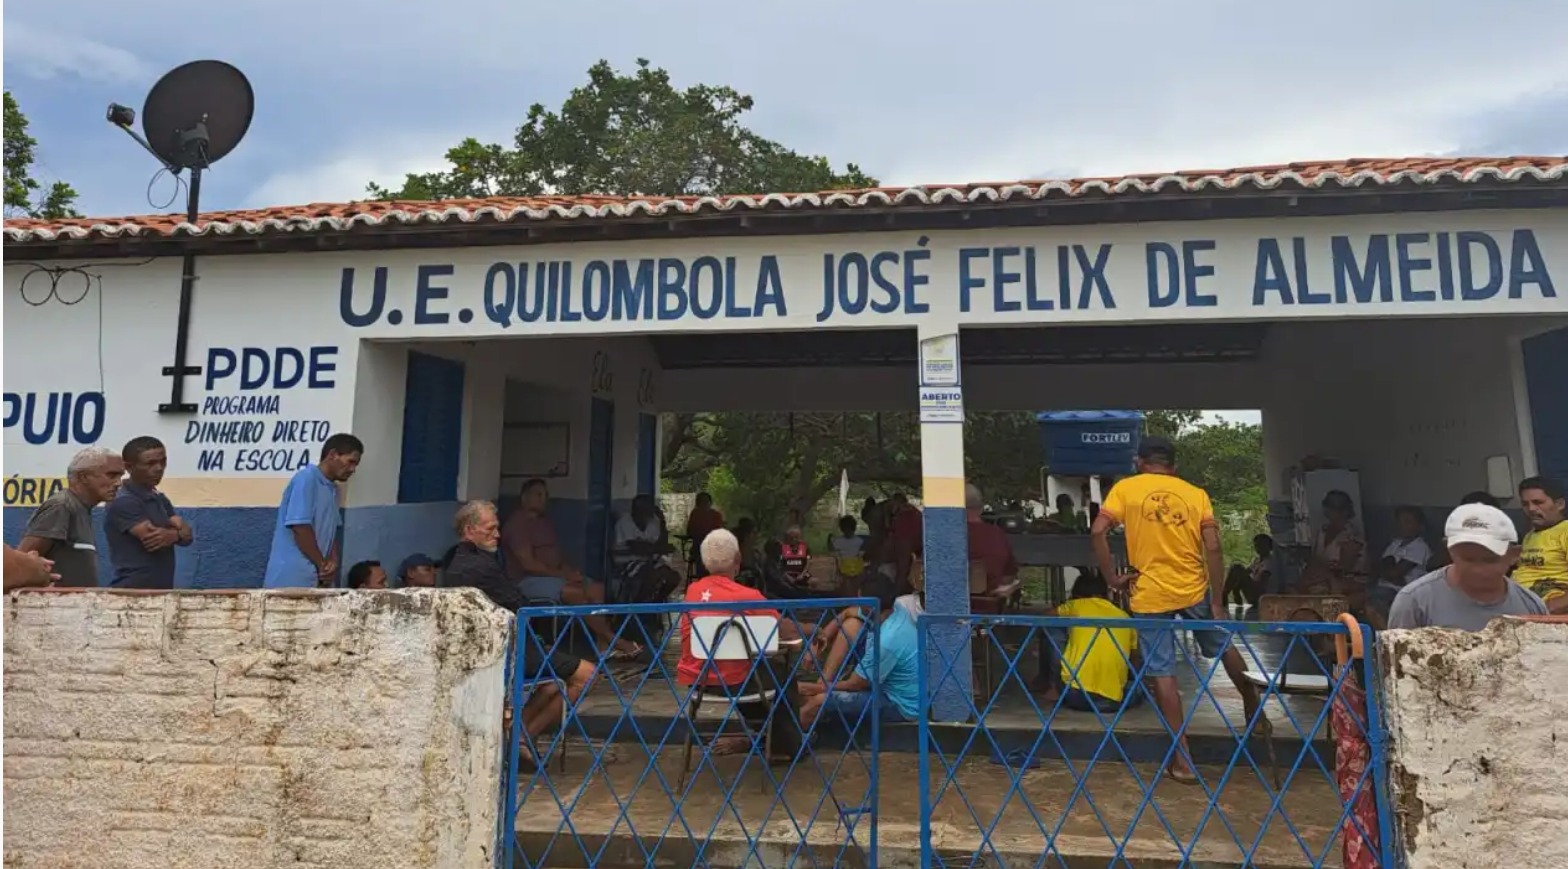 grupo de pessoas, de várias idades, espalhadas pelo hall de entrada da escola Quilombola José Félix de Almeida, cujo nome está pintado em letras azuis na fachada branca da escola.